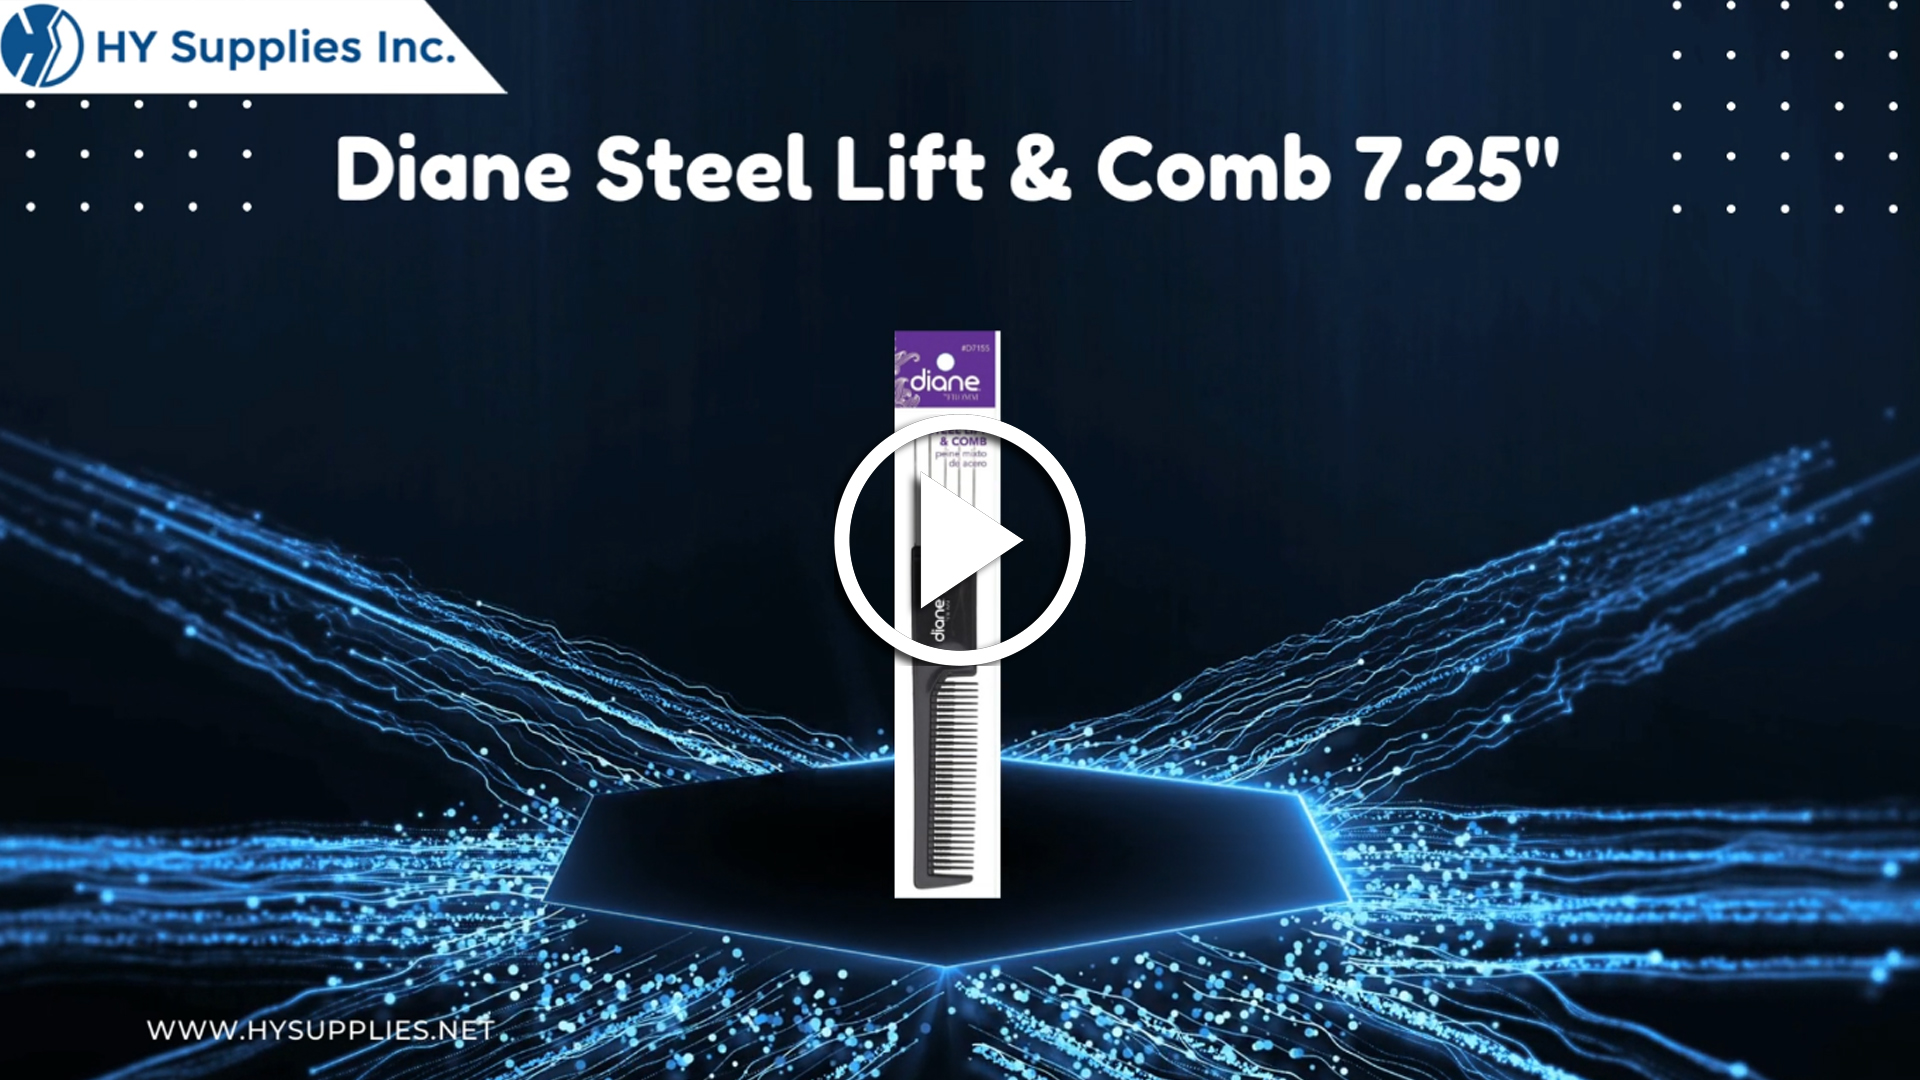 Diane Steel Lift & Comb 7.25"